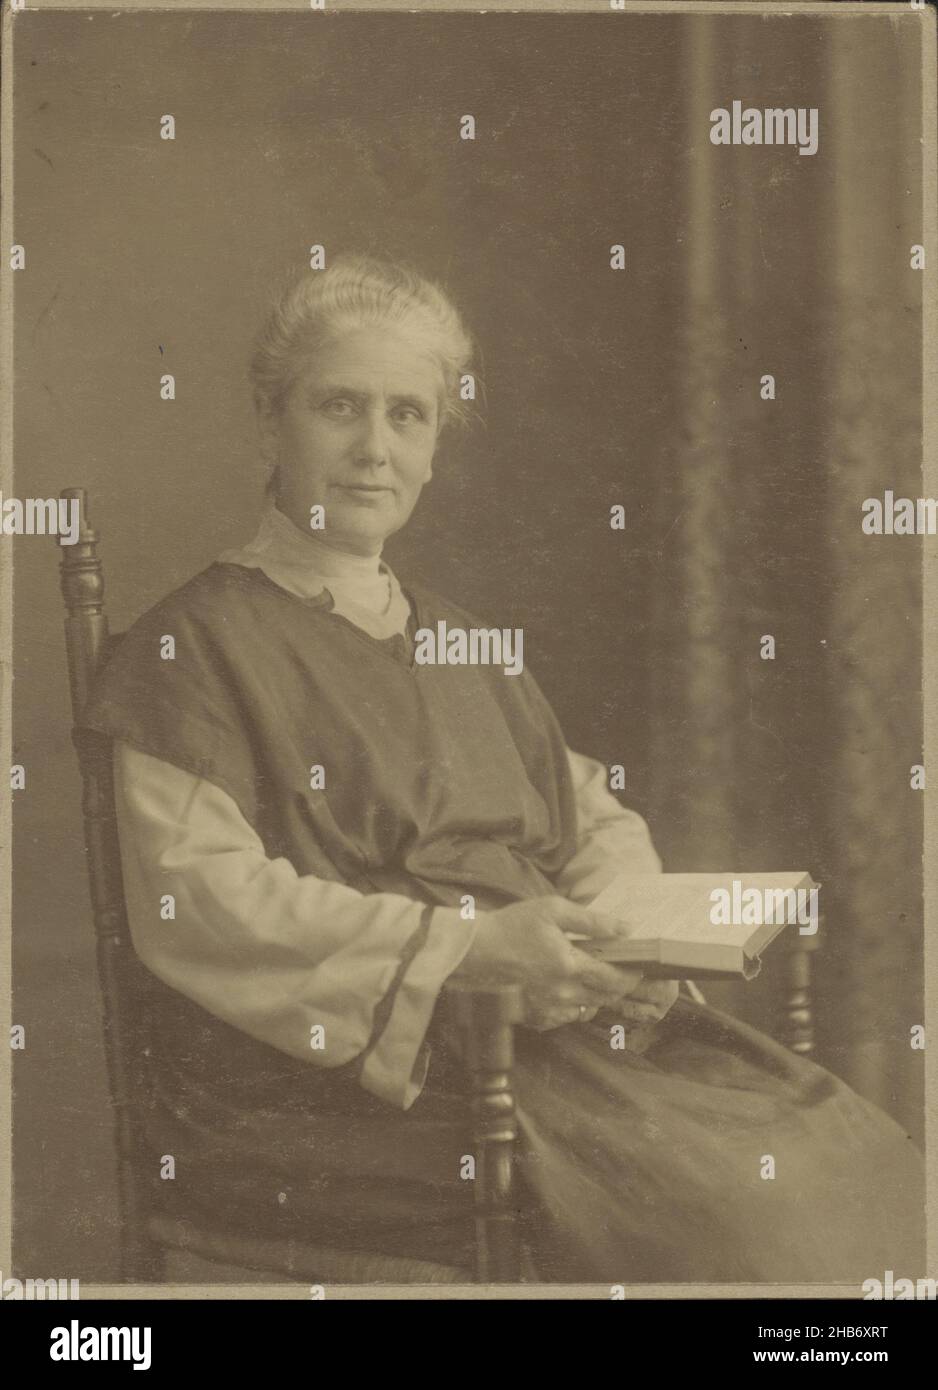 Mme M. Lobry van Troostenburg de Bruyn-Simon Thomas dans ce qu'on appelle les vêtements de réforme, anonyme, c.1914 - c.1918, carton, papier, hauteur 145 mm × largeur 106 mm Banque D'Images